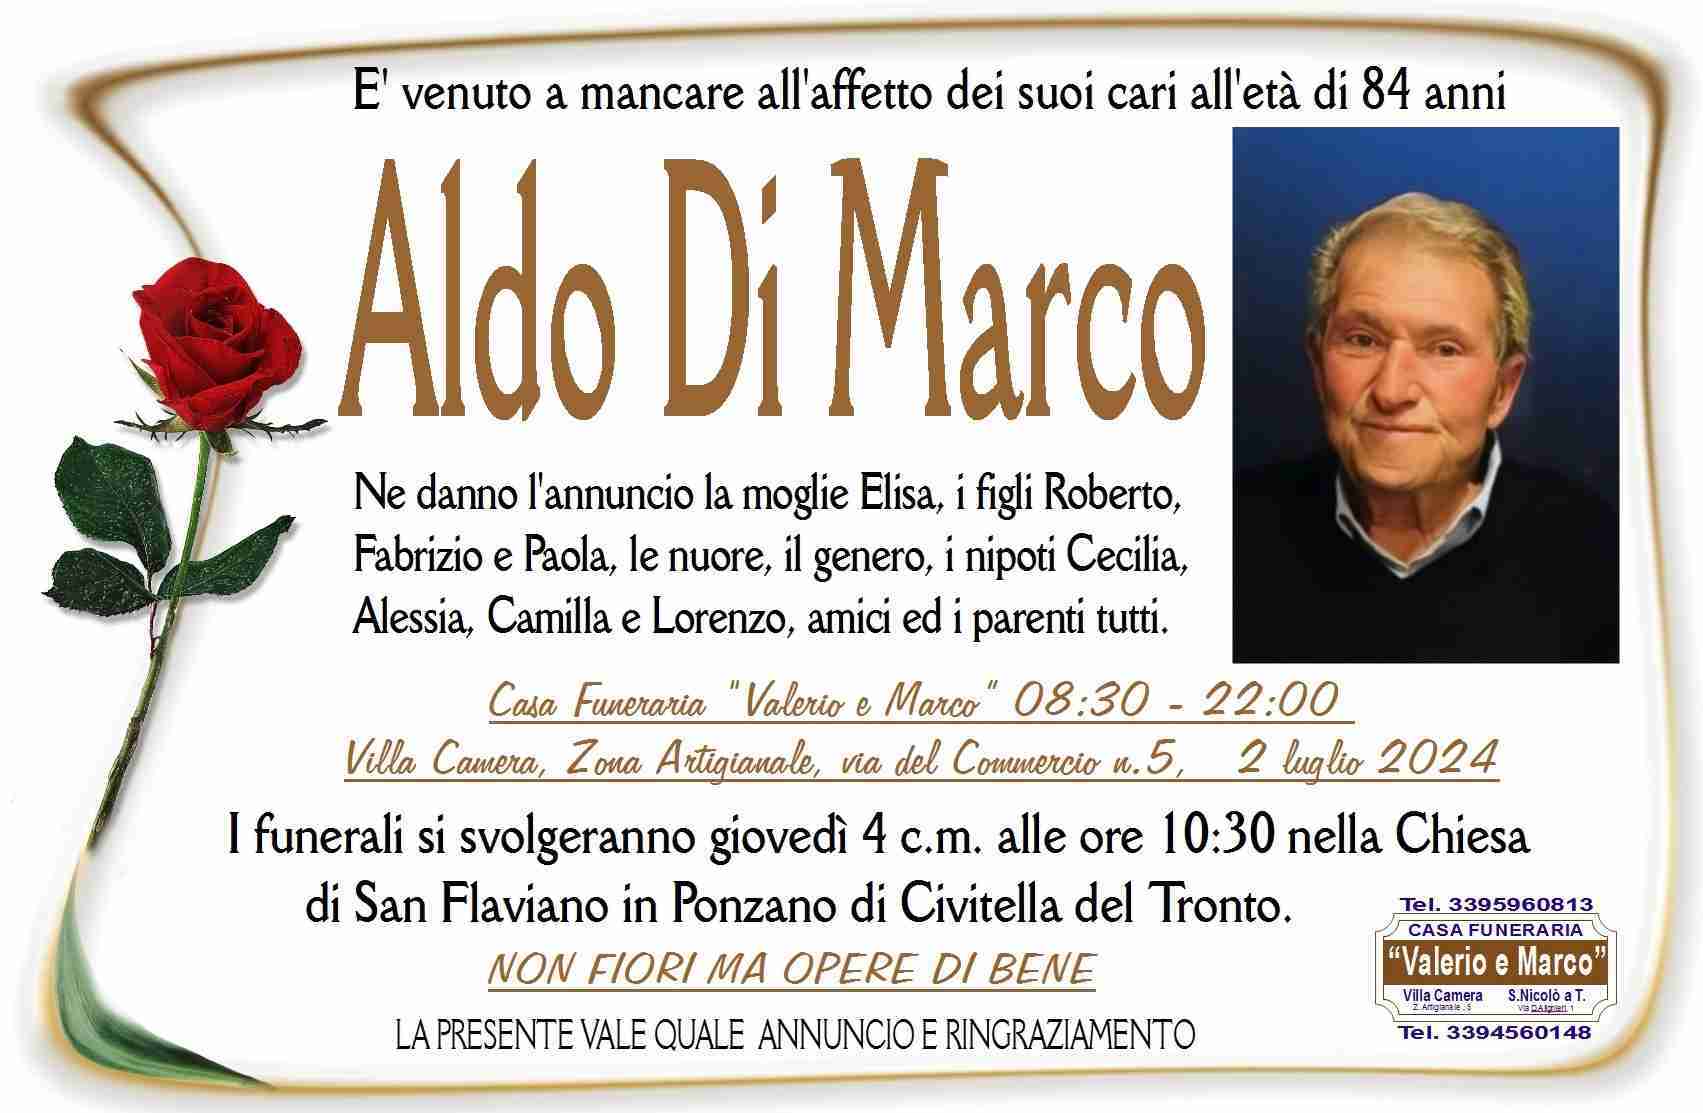 Aldo Di Marco